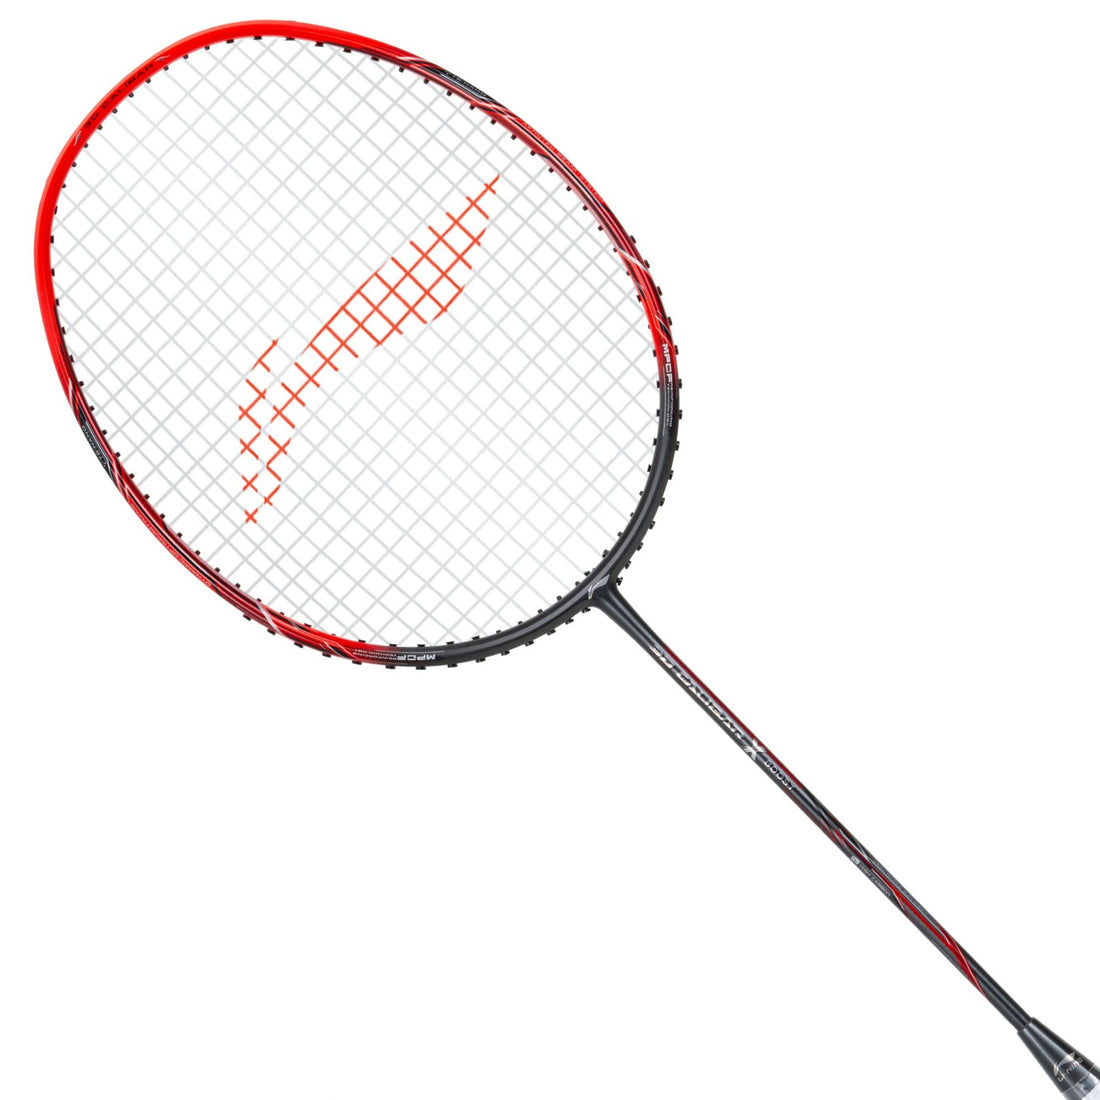 Li-Ning 3D Calibar X Boost Badminton Racquet - Best Price online Prokicksports.com